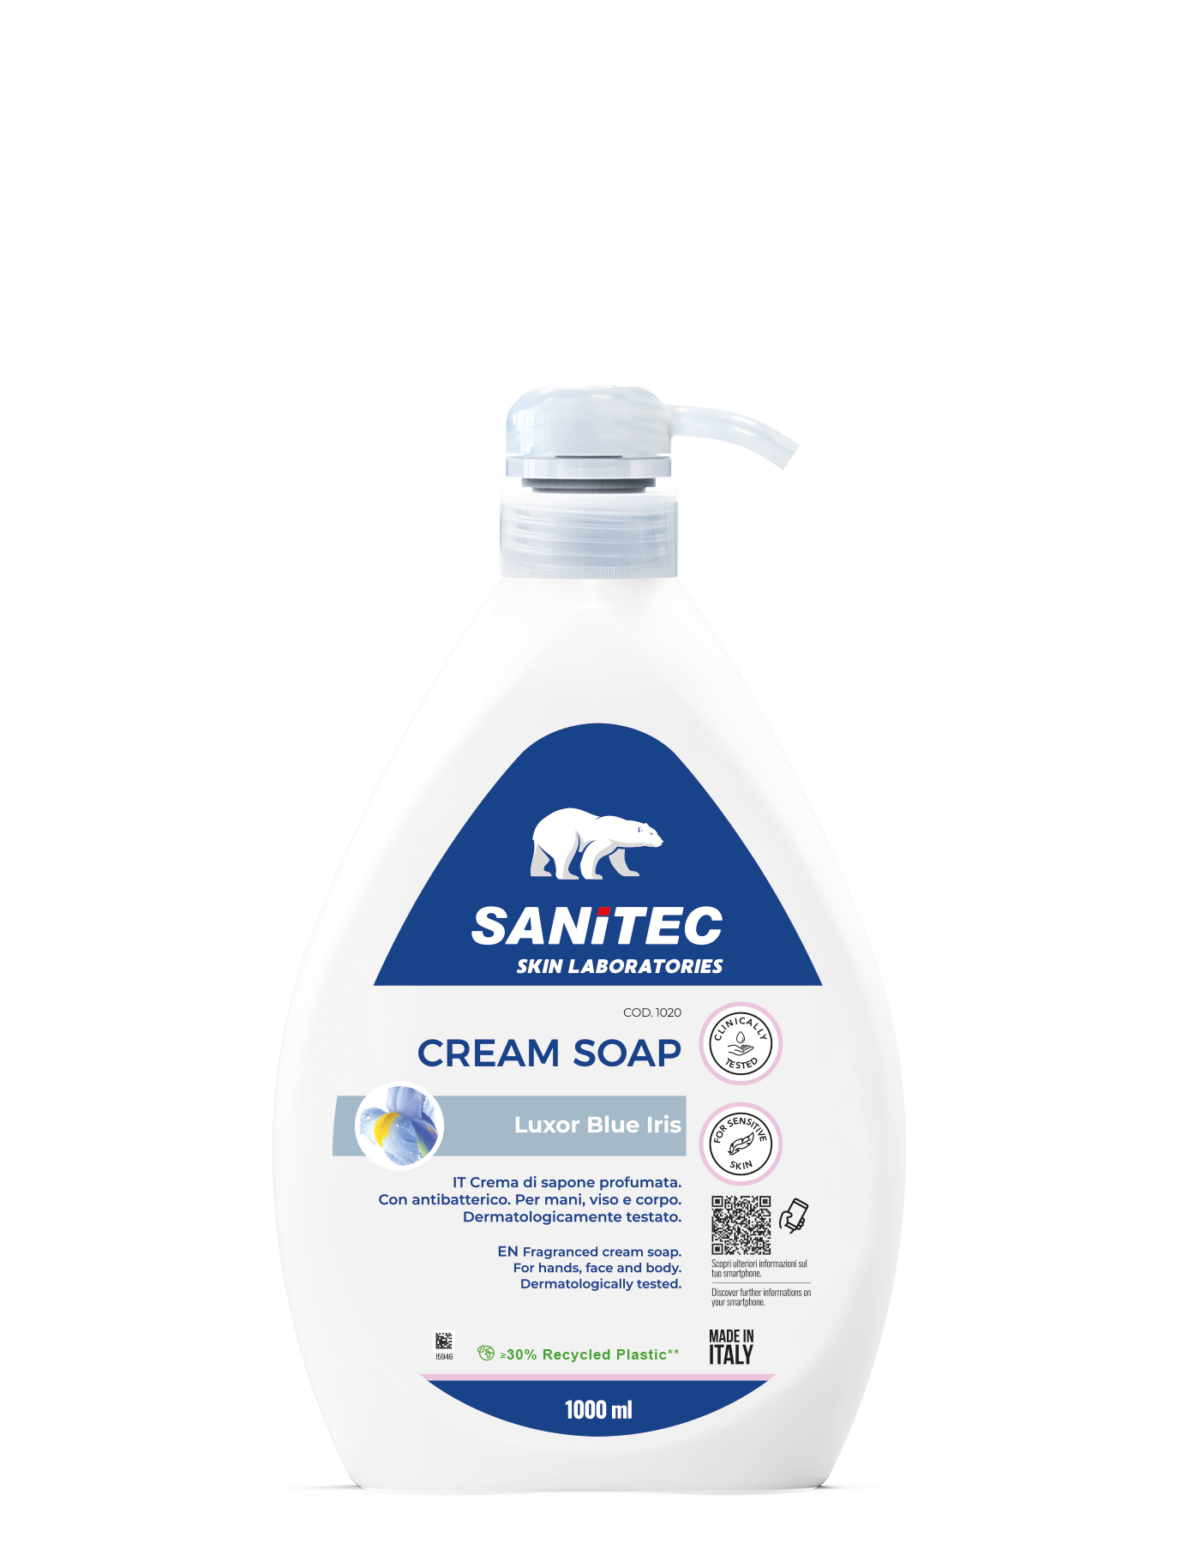 Sanitec CREAM SOAP - Luxor Blue Iris 1000ml Image